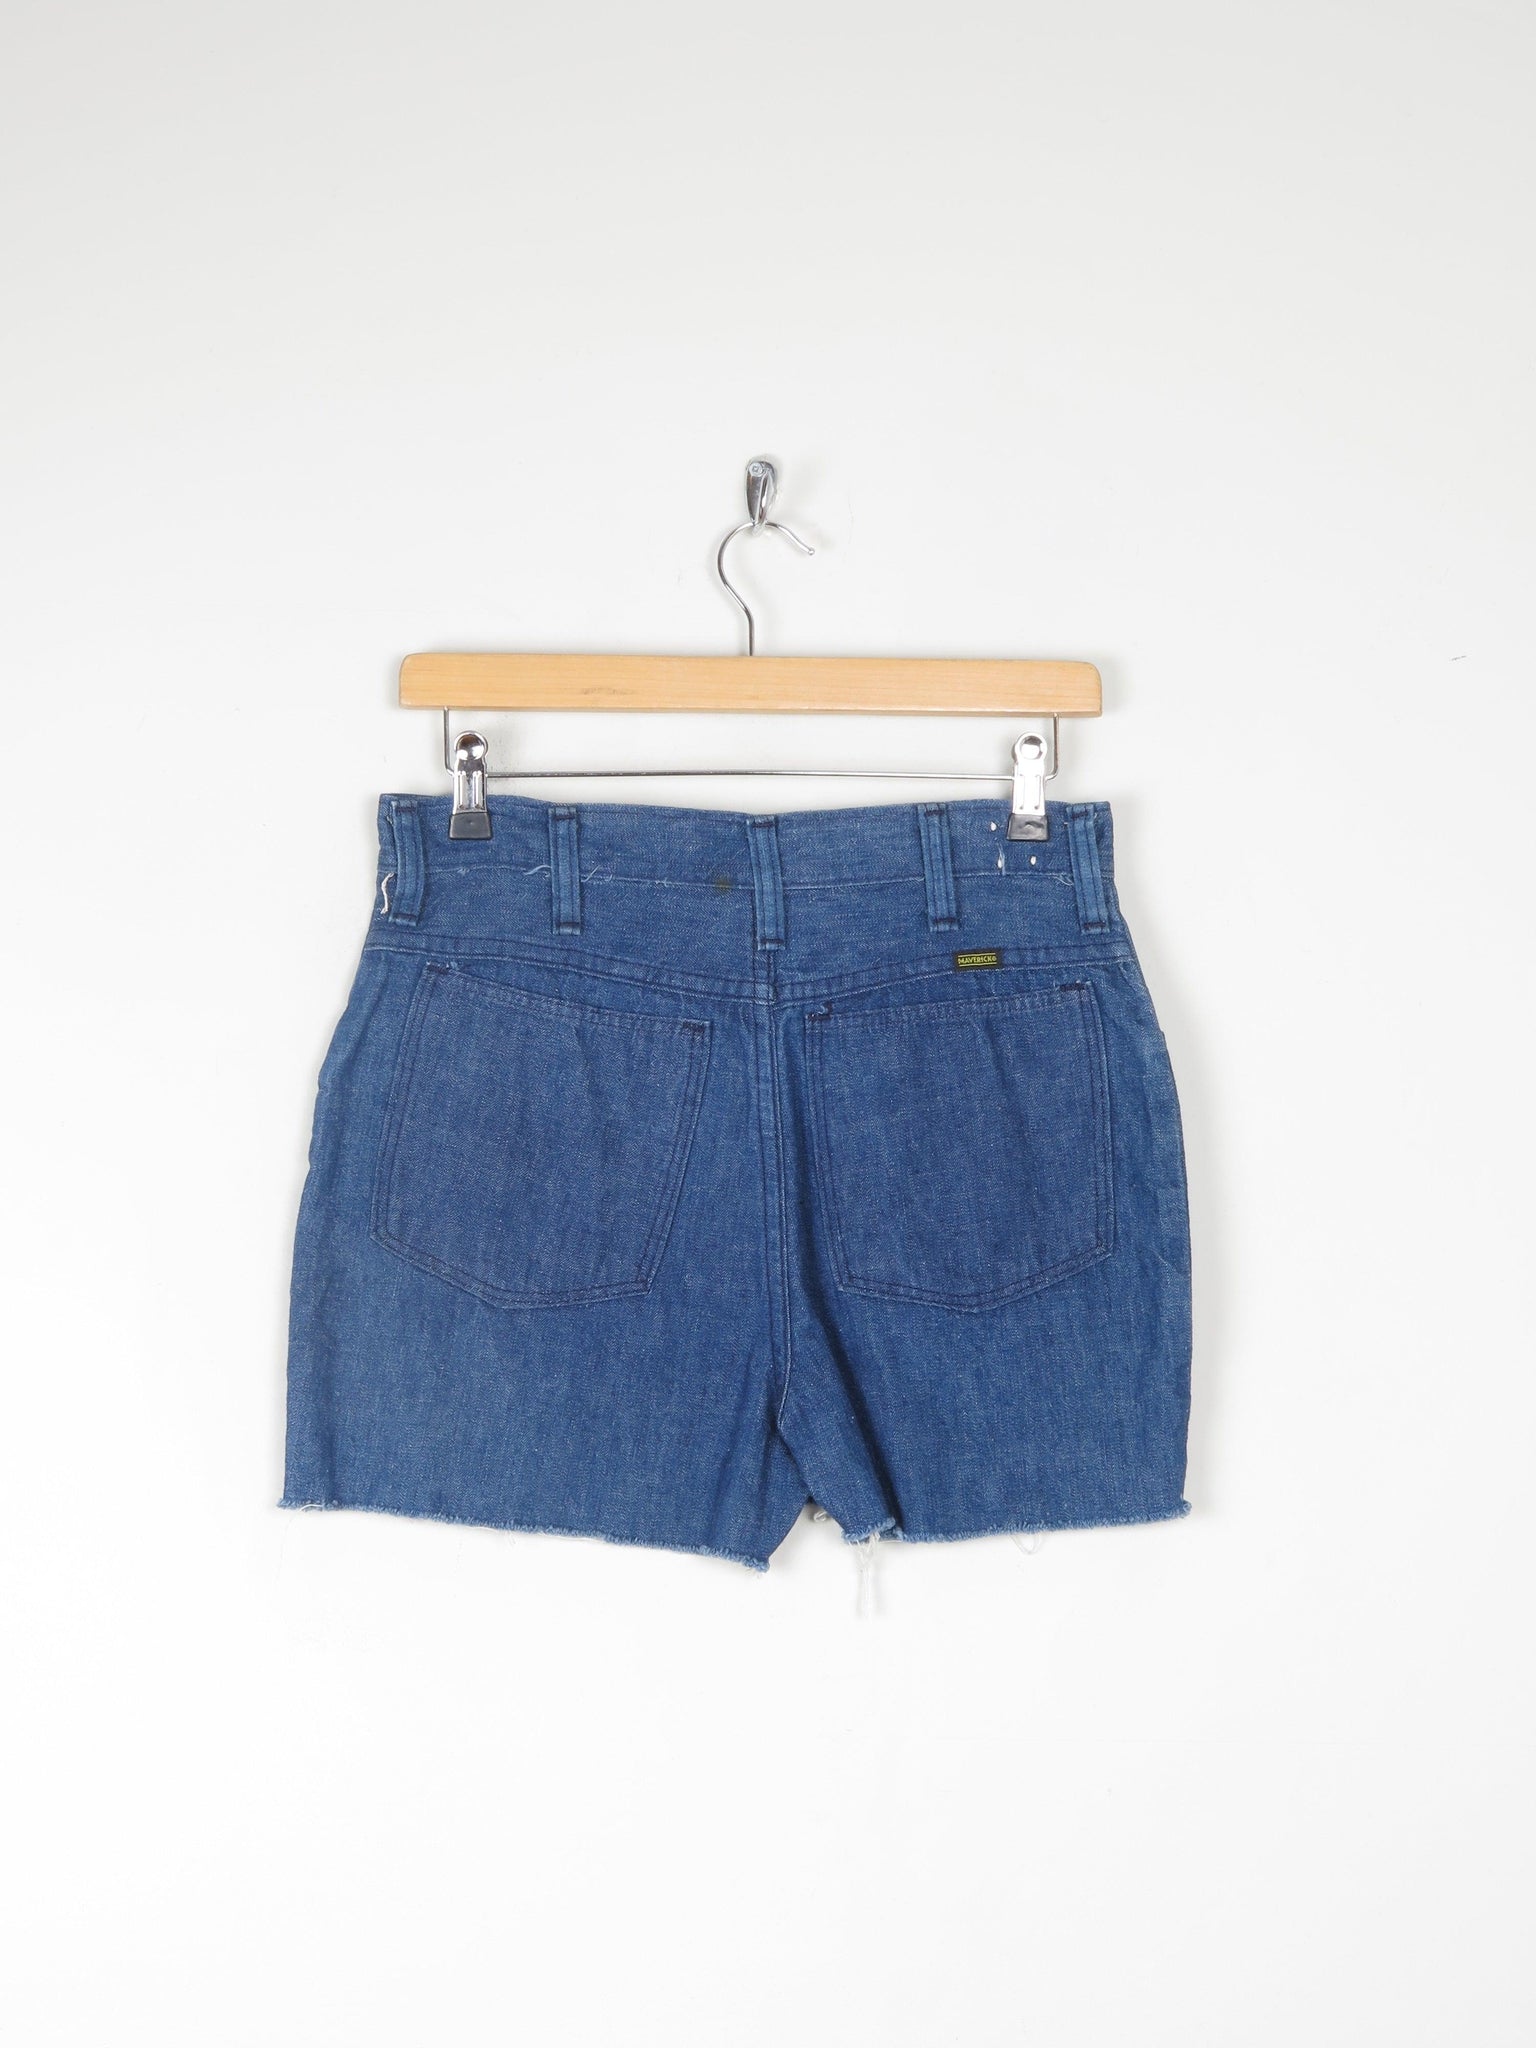 Wrangler/ Maverick  Vintage Cut Off Denim Shorts 10 29" - The Harlequin